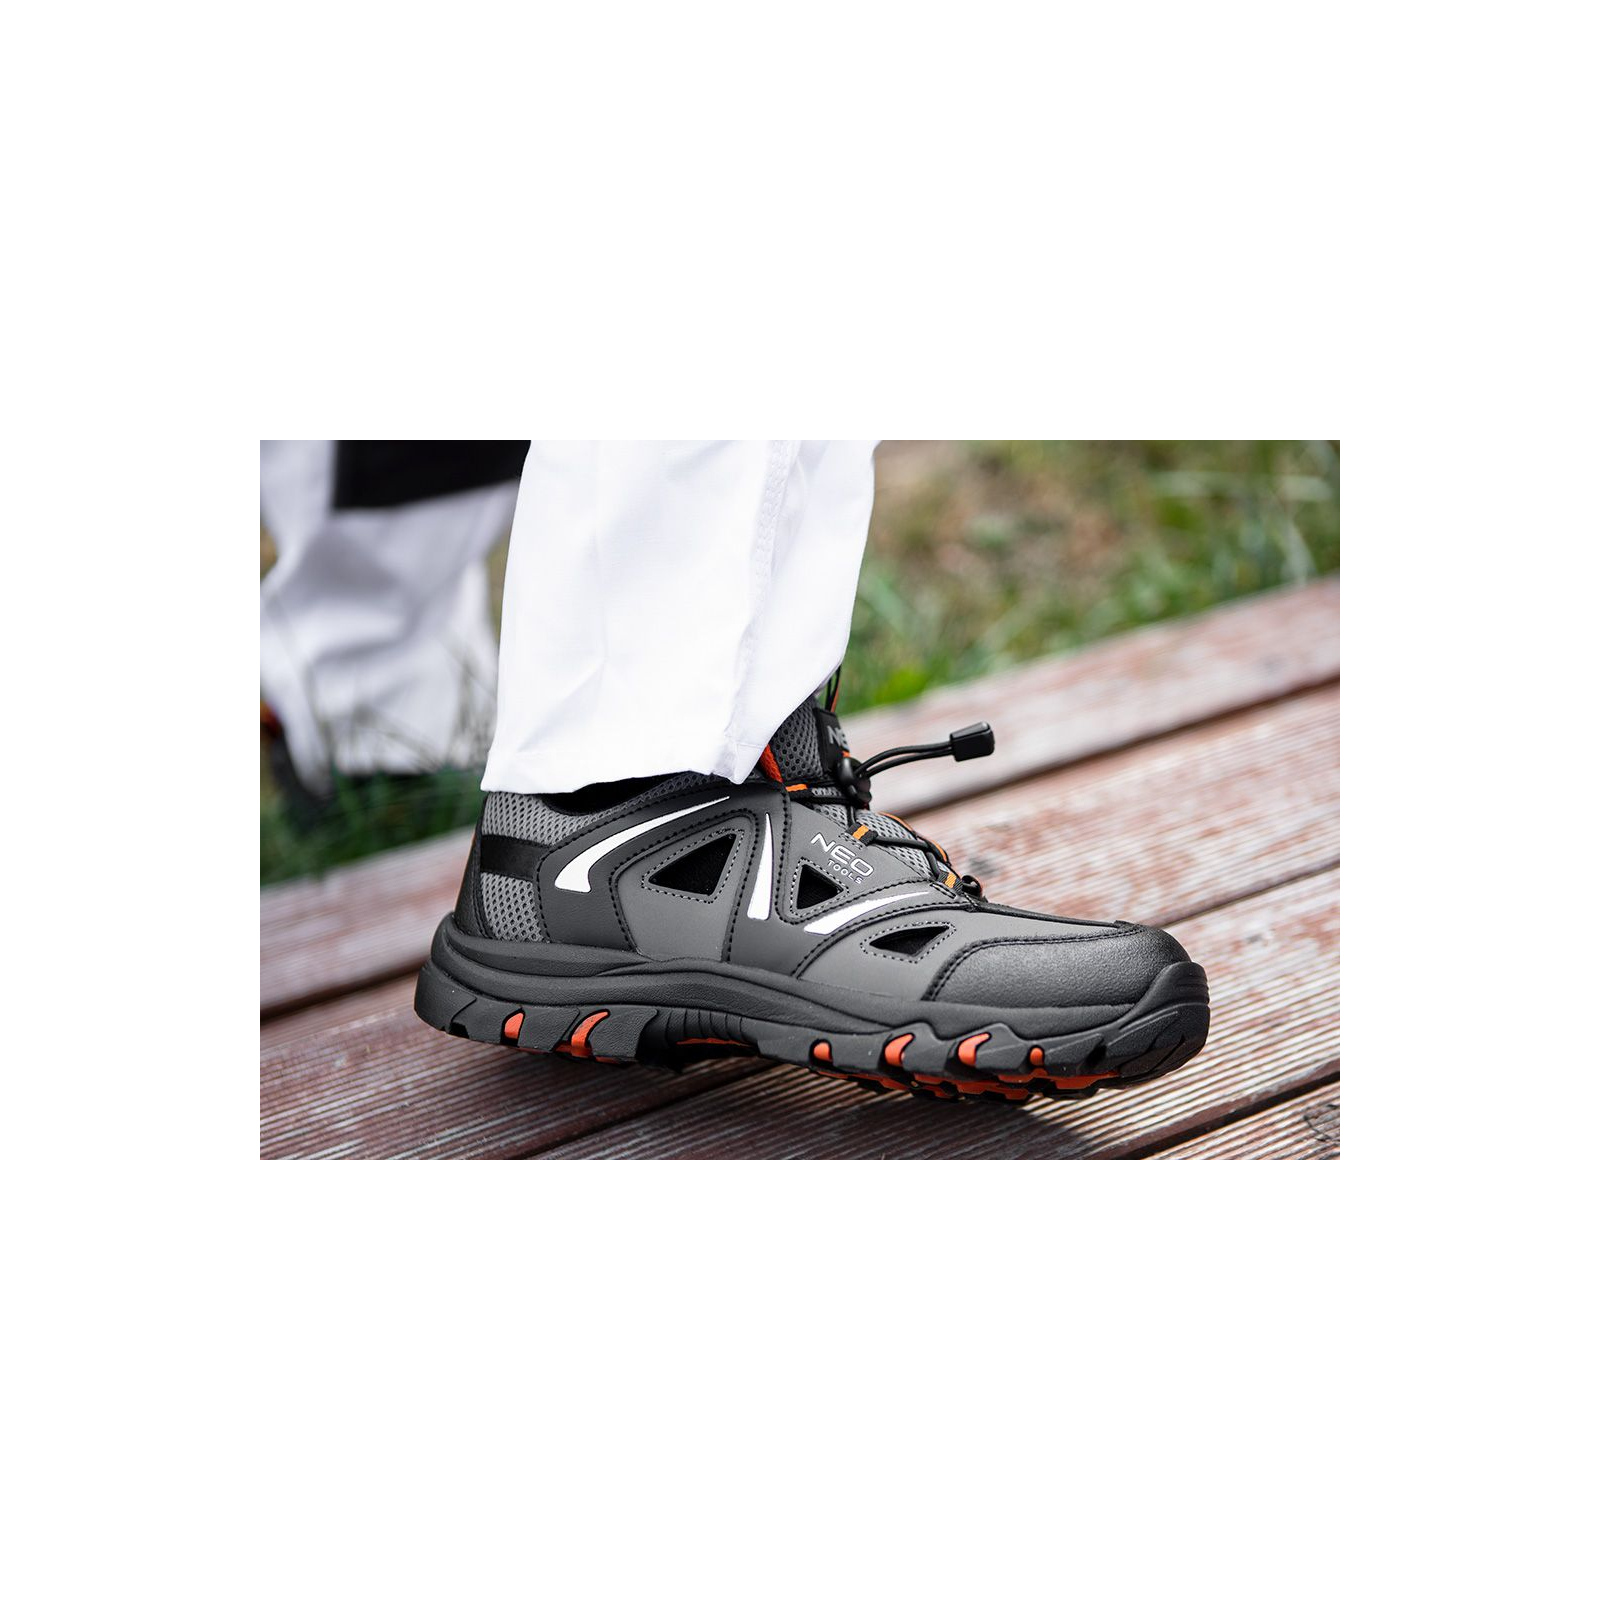 Ботинки рабочие Neo Tools кроссовки дышащие, подошва EVA, класс защиты OB, SRA, р.41 (82-722) изображение 3